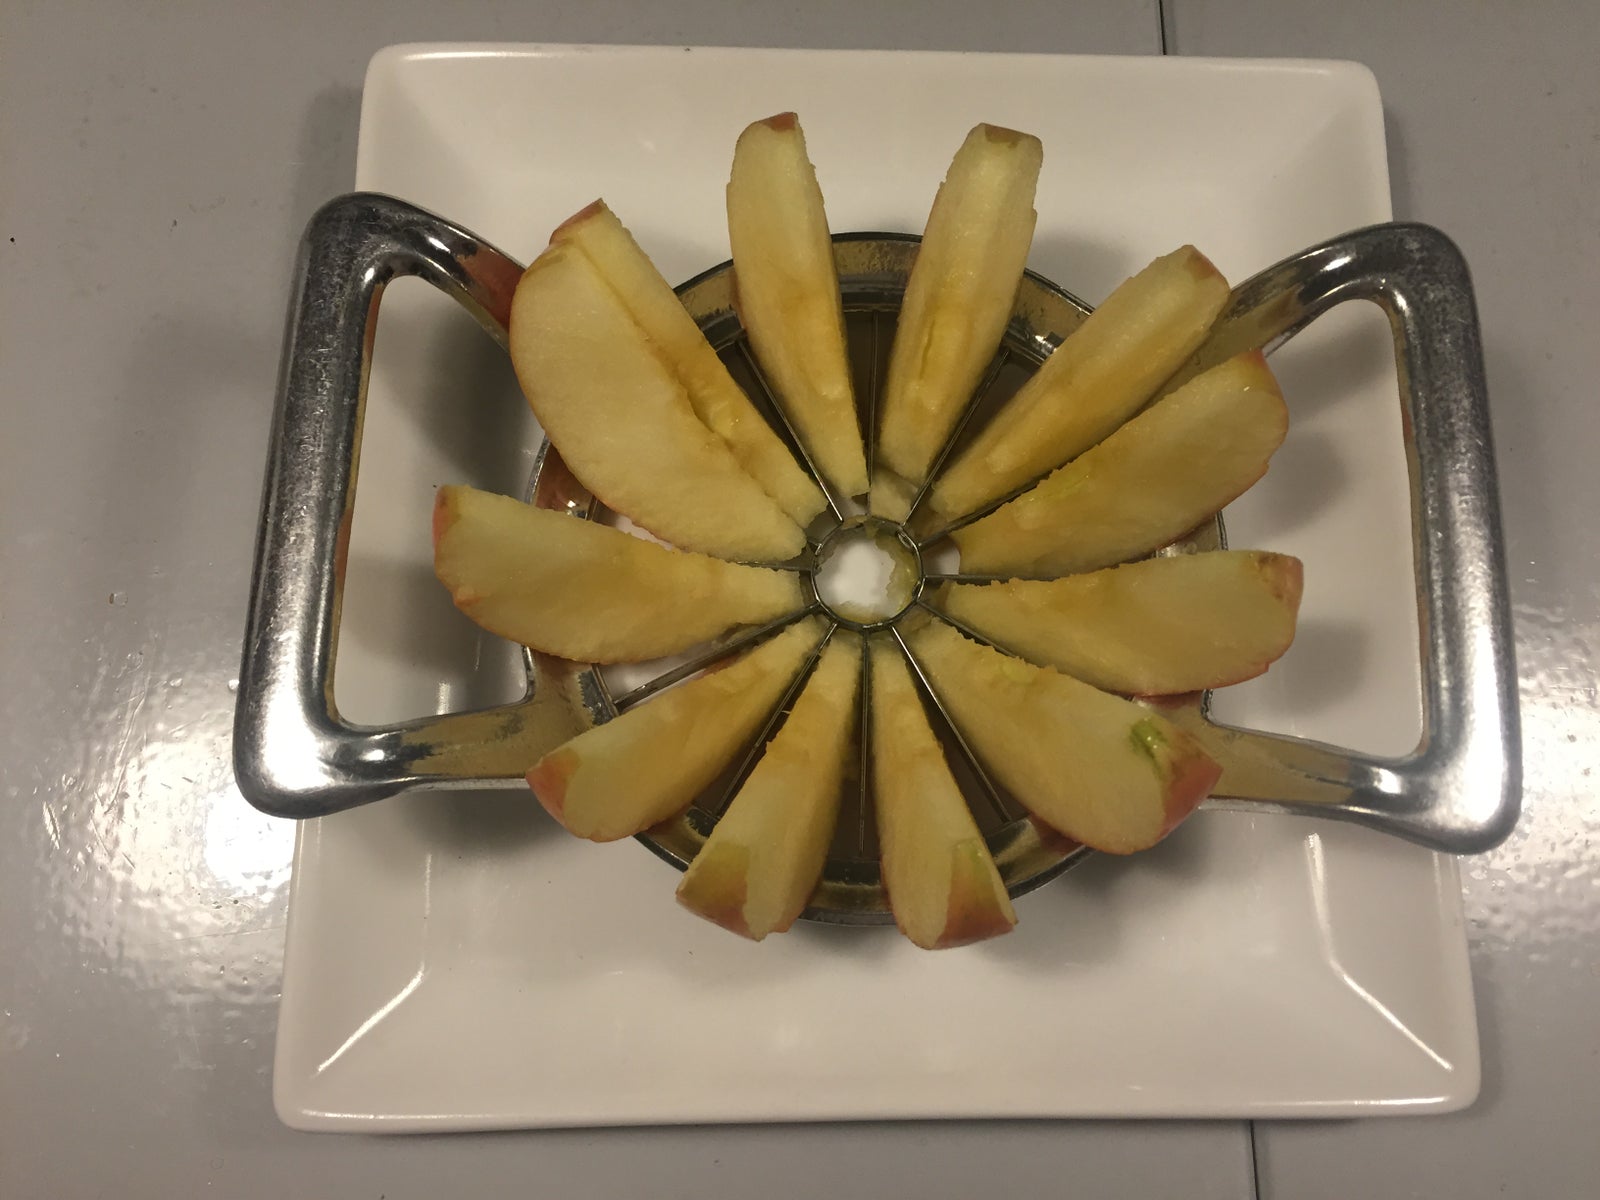 Æbledeler samt kerneudstikker